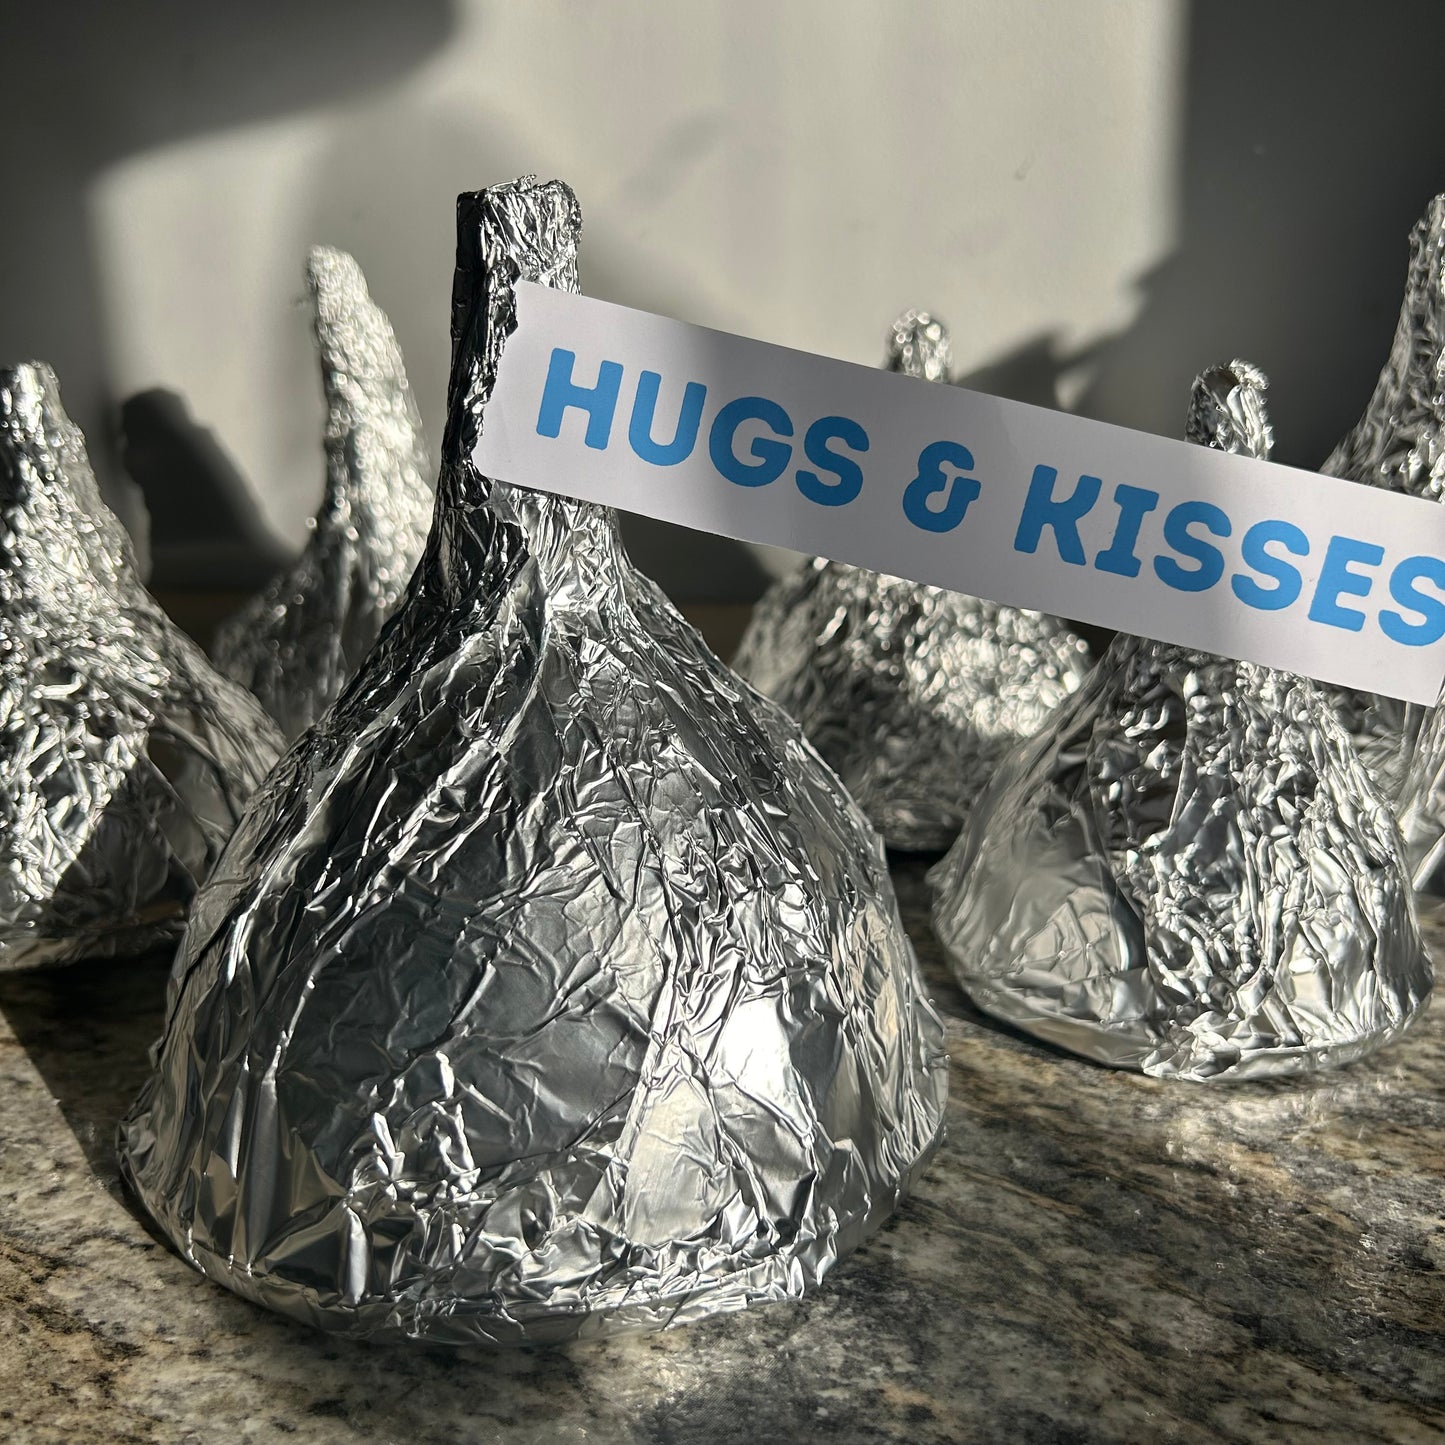 Hugs & Kisses Surprise 4-6 surprises in each!!!